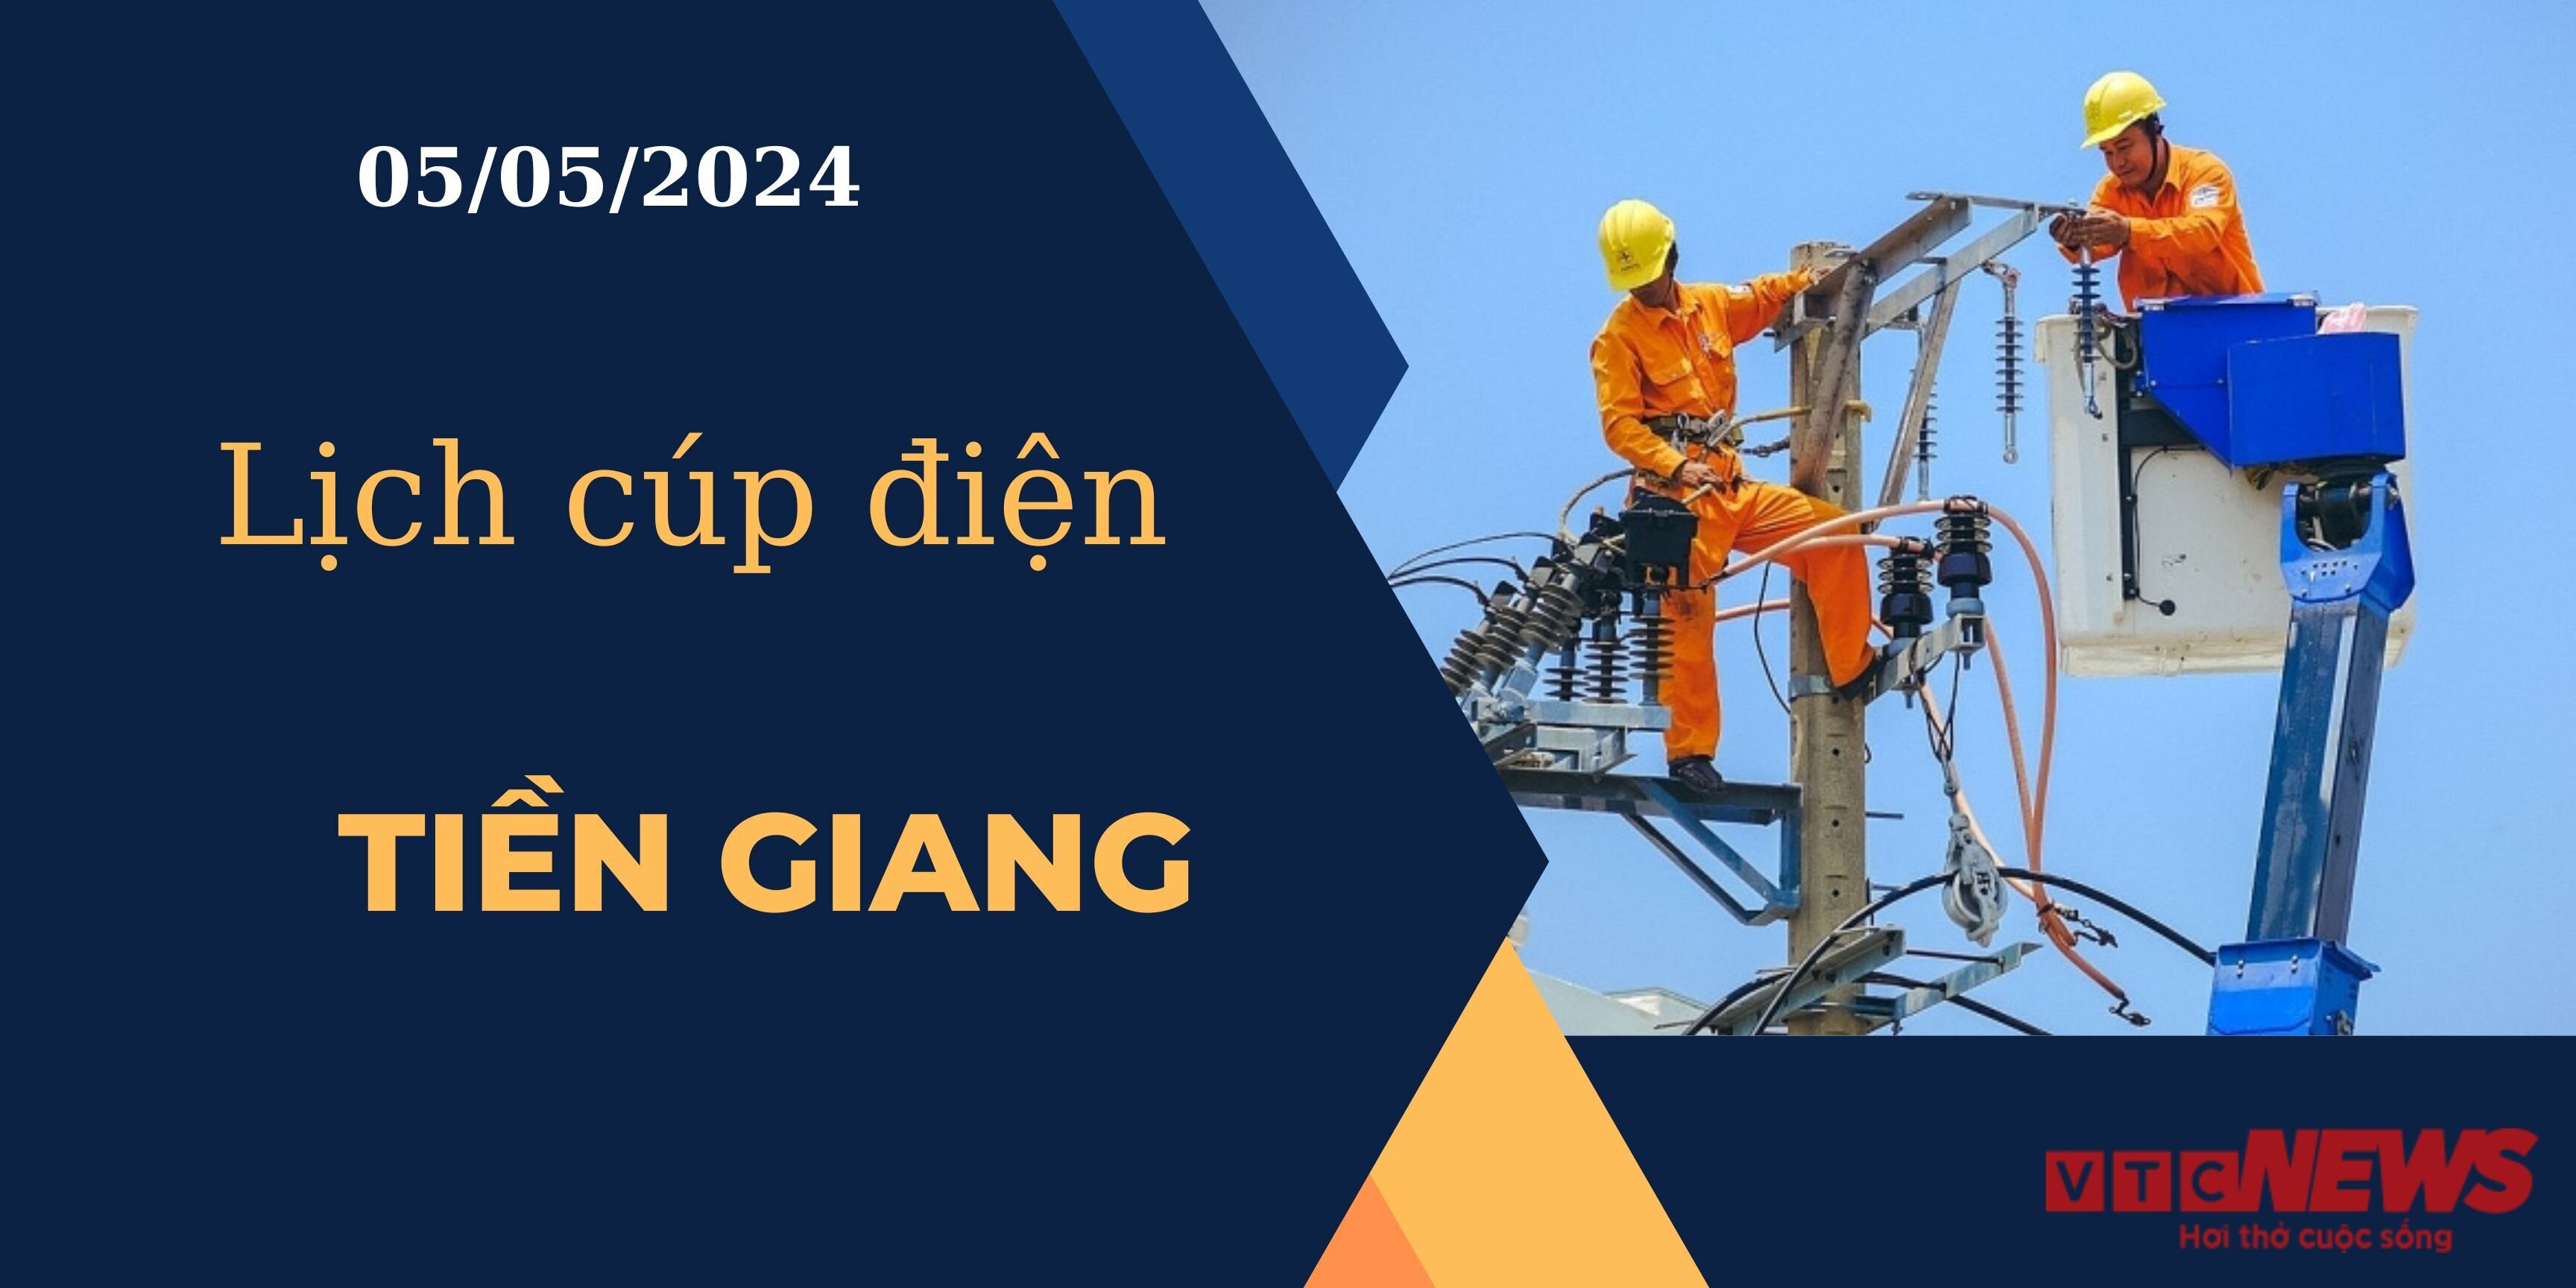 Lịch cúp điện hôm nay ngày 05/05/2024 tại Tiền Giang